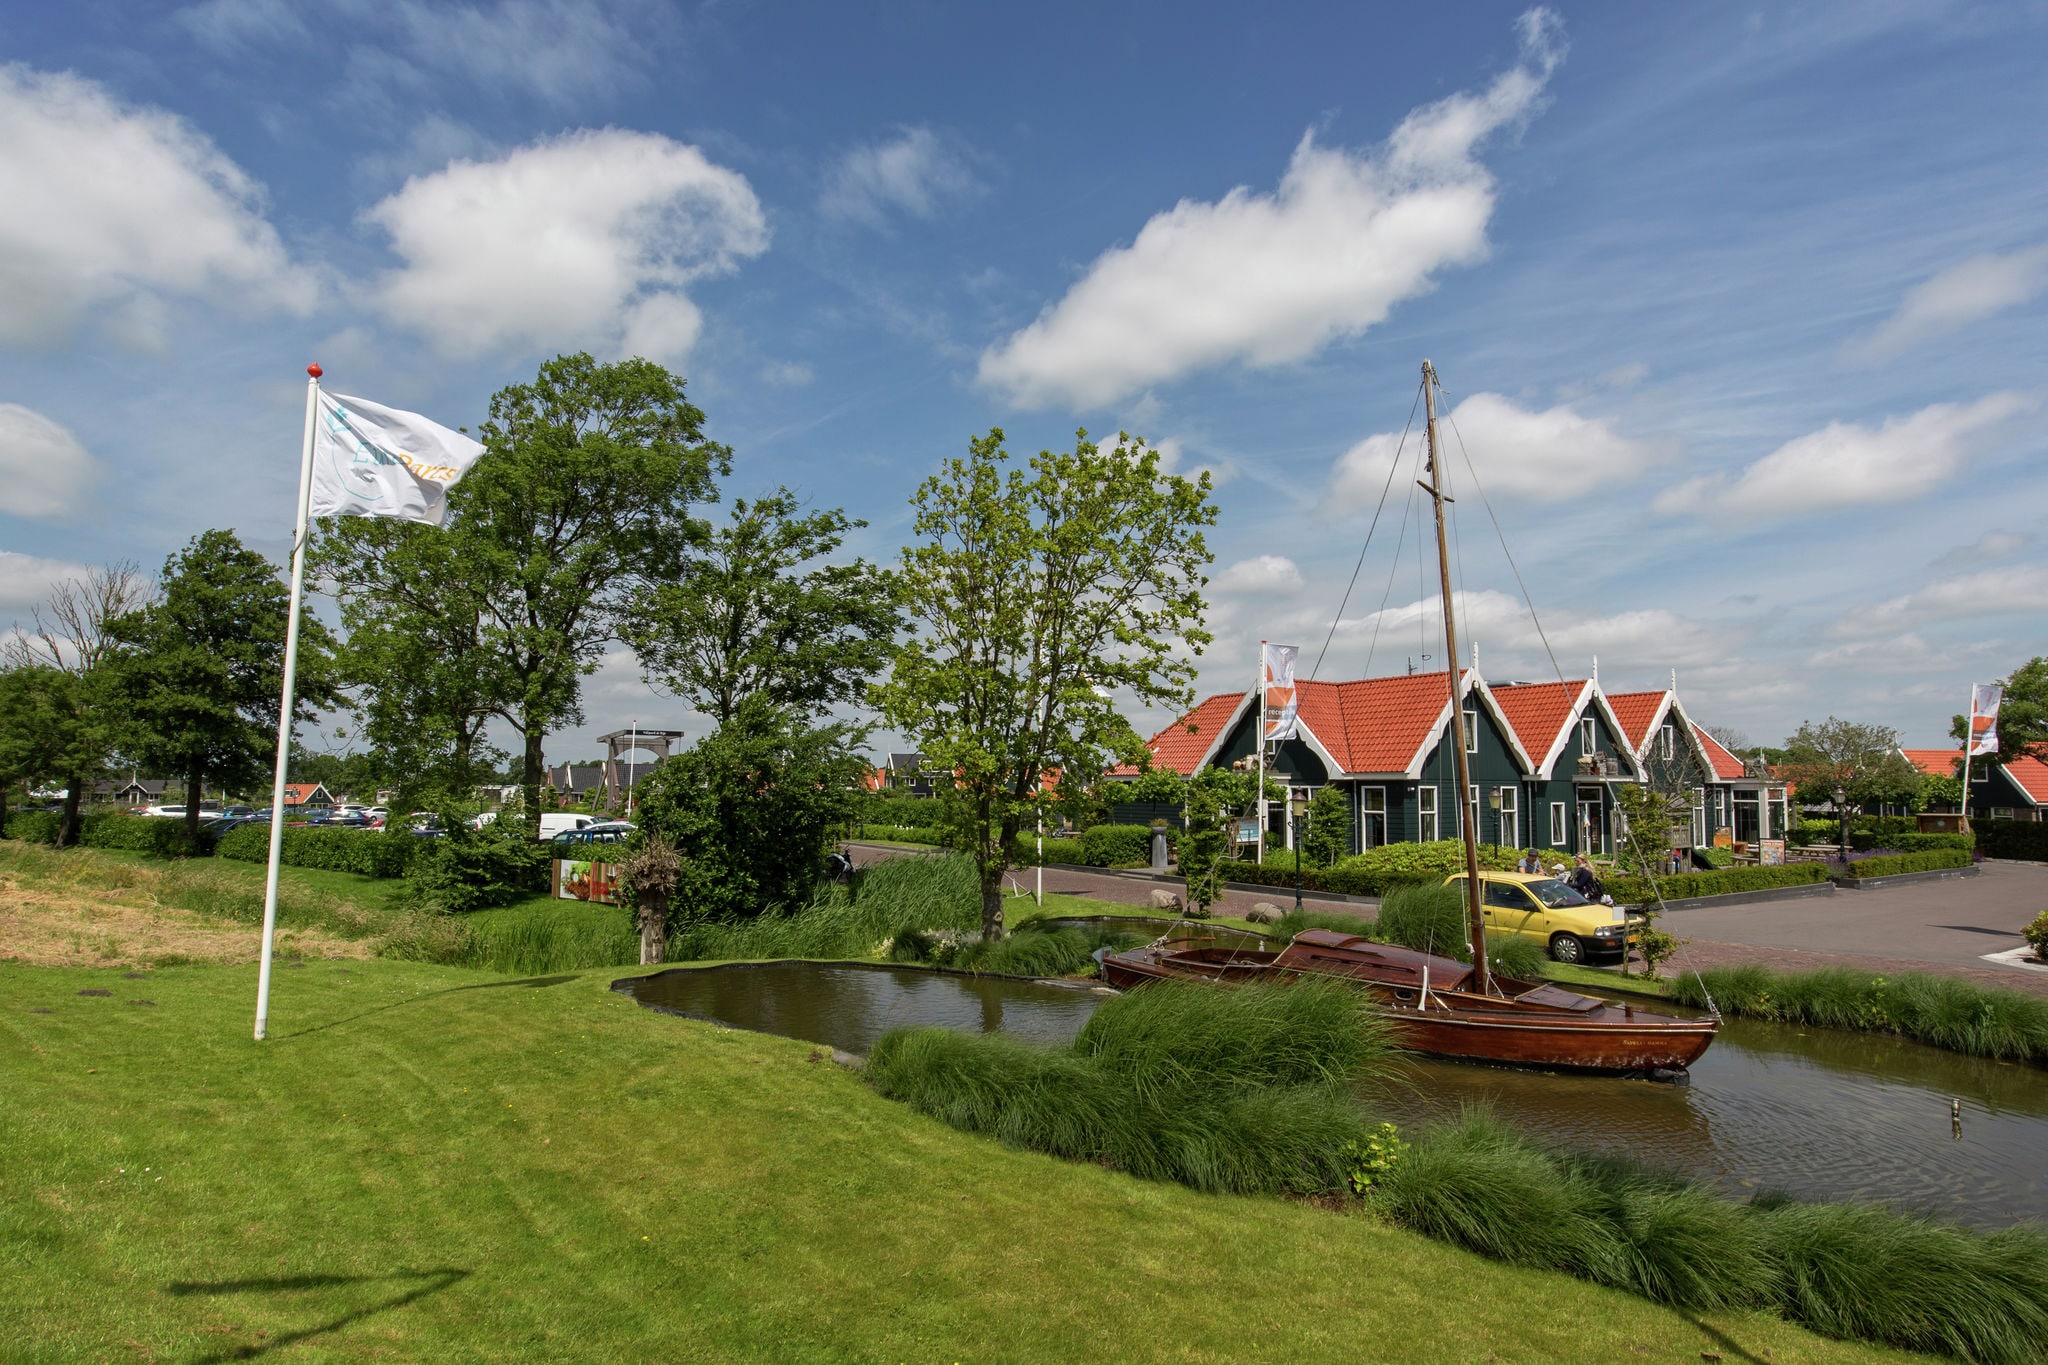 Maison de vacances à 15 km d'Alkmaar